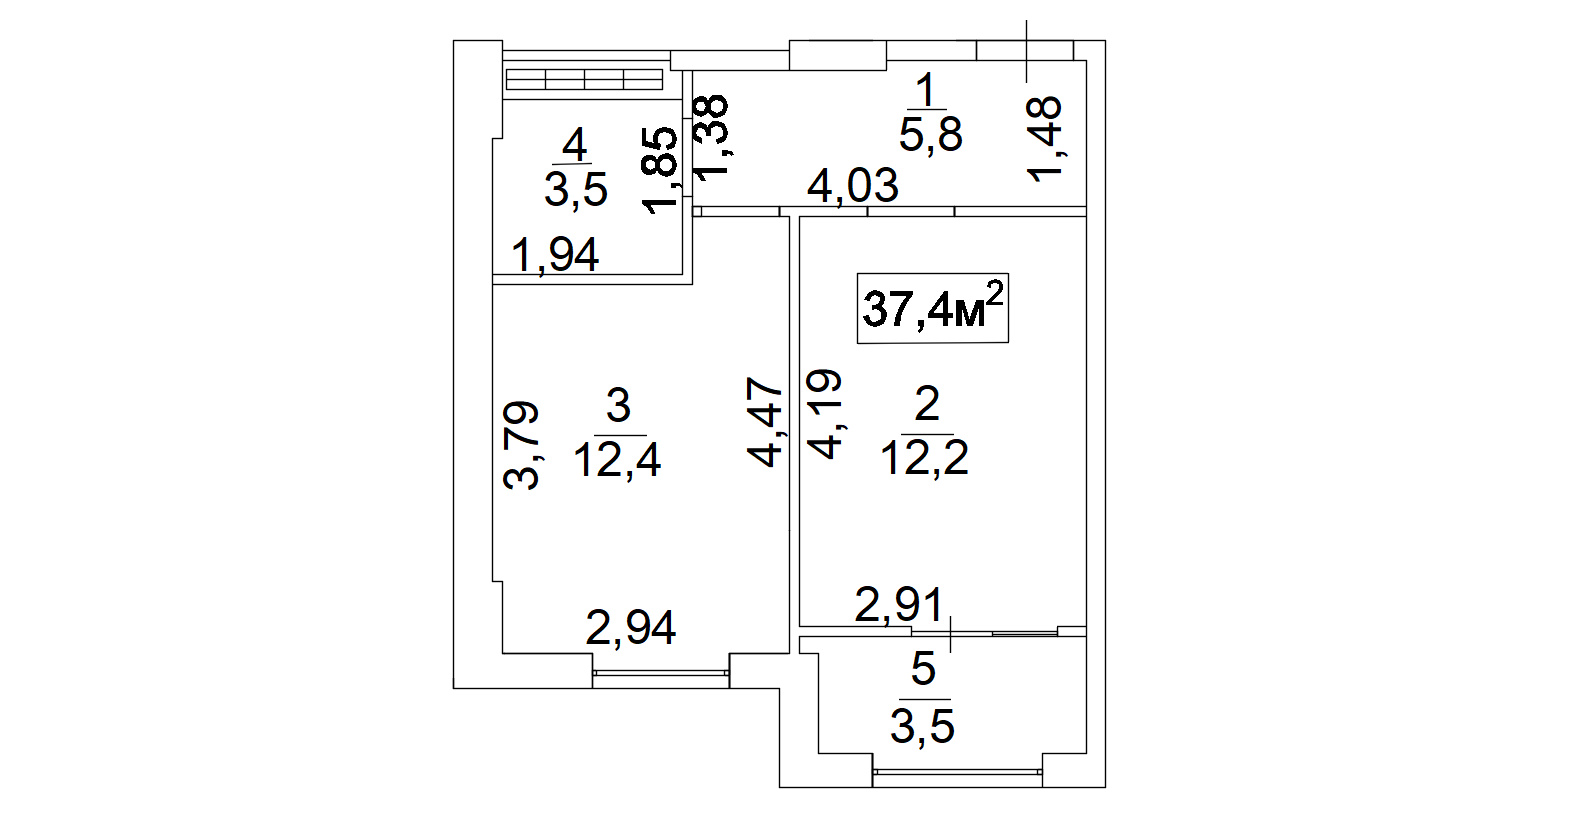 Планировка 1-к квартира площей 37.4м2, AB-02-05/0004а.